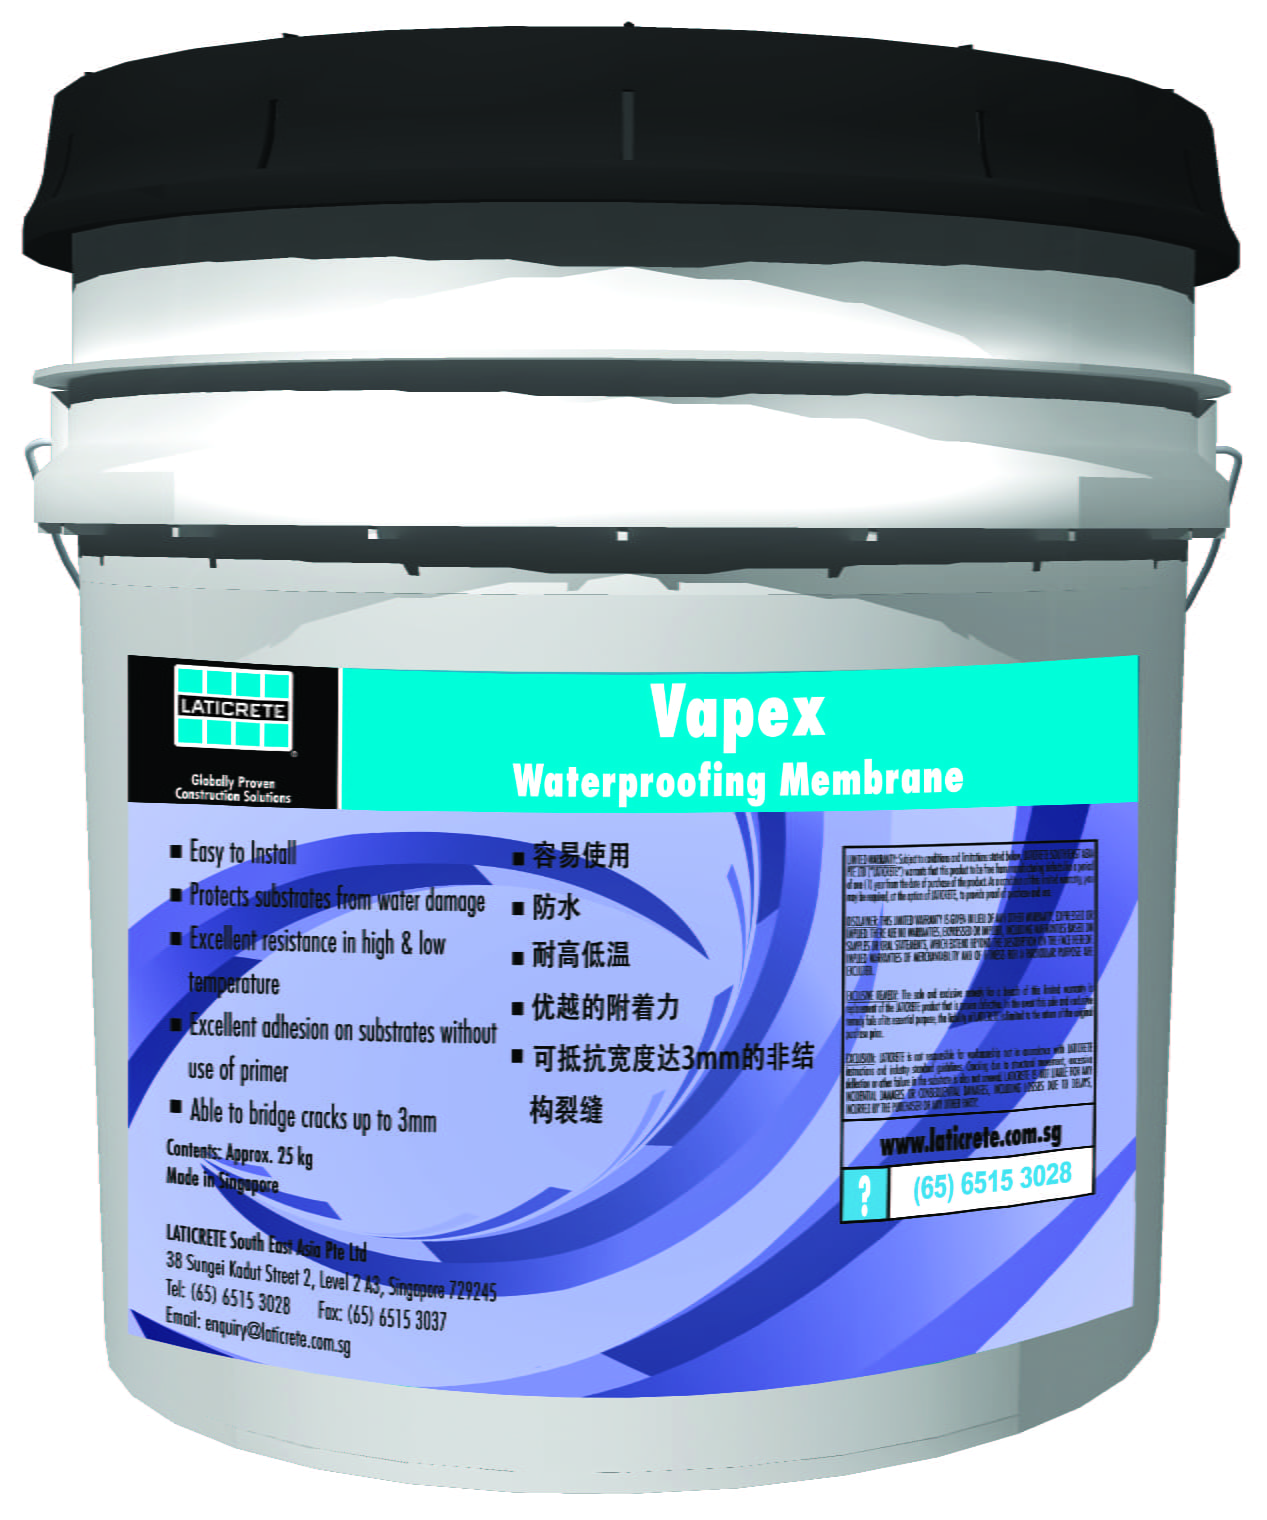 Vapex Waterproofing Membrane